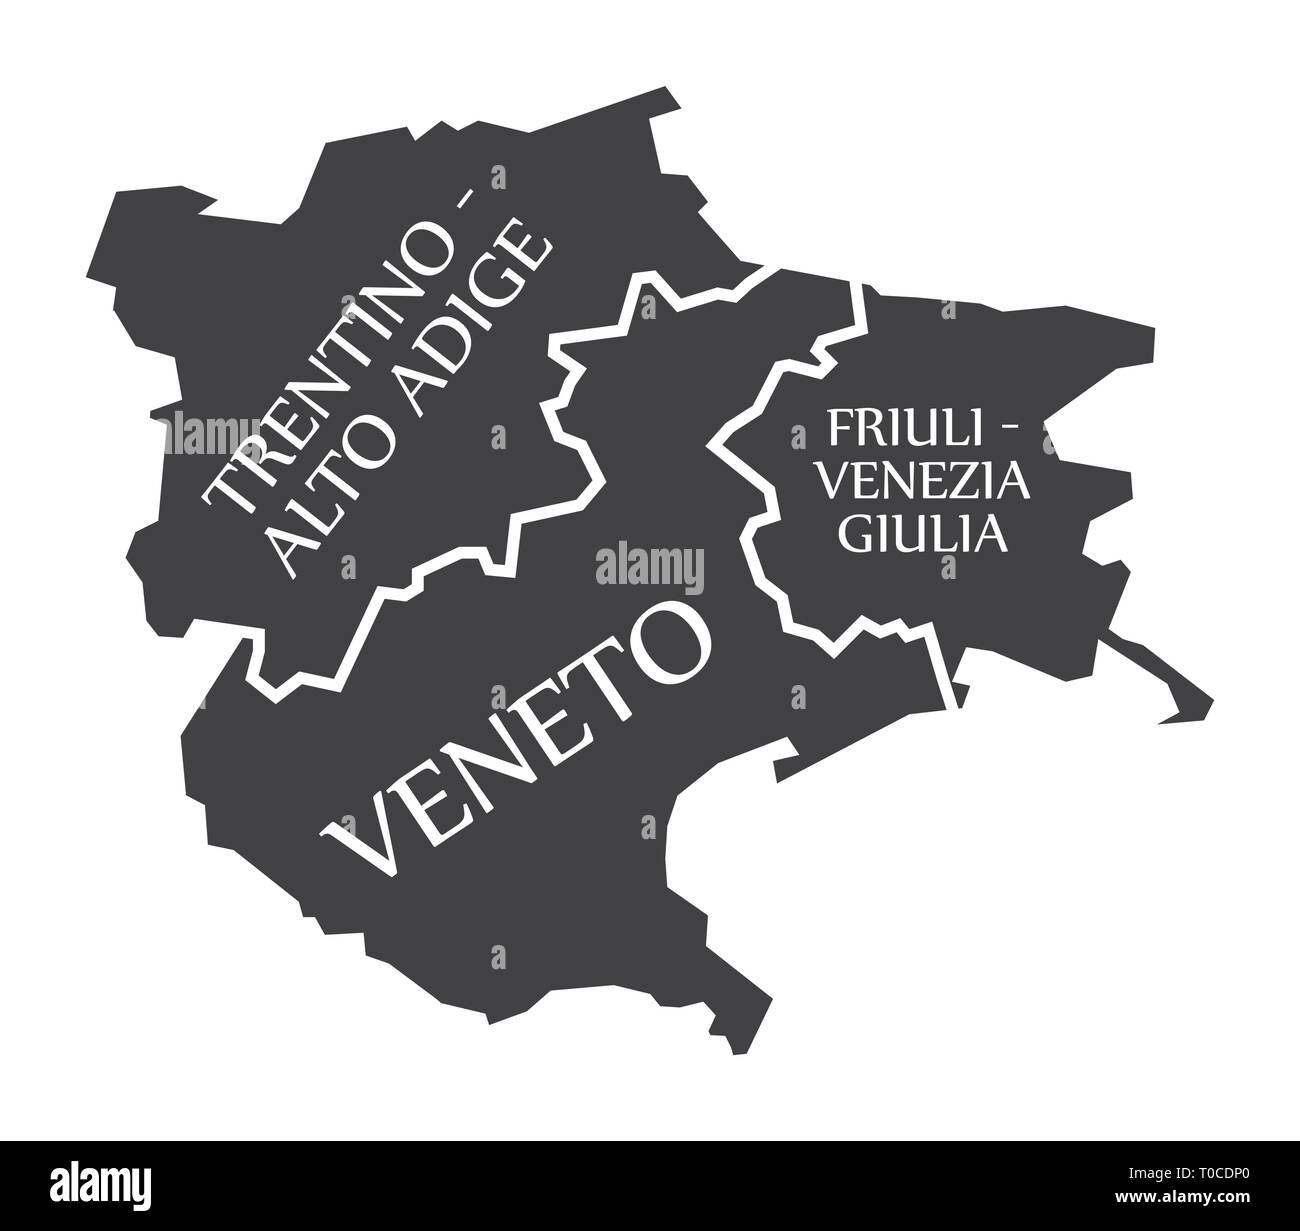 Trentino - Alto Adige - Veneto - Friuli - Venezia - Giulia mappa Italia Illustrazione Vettoriale